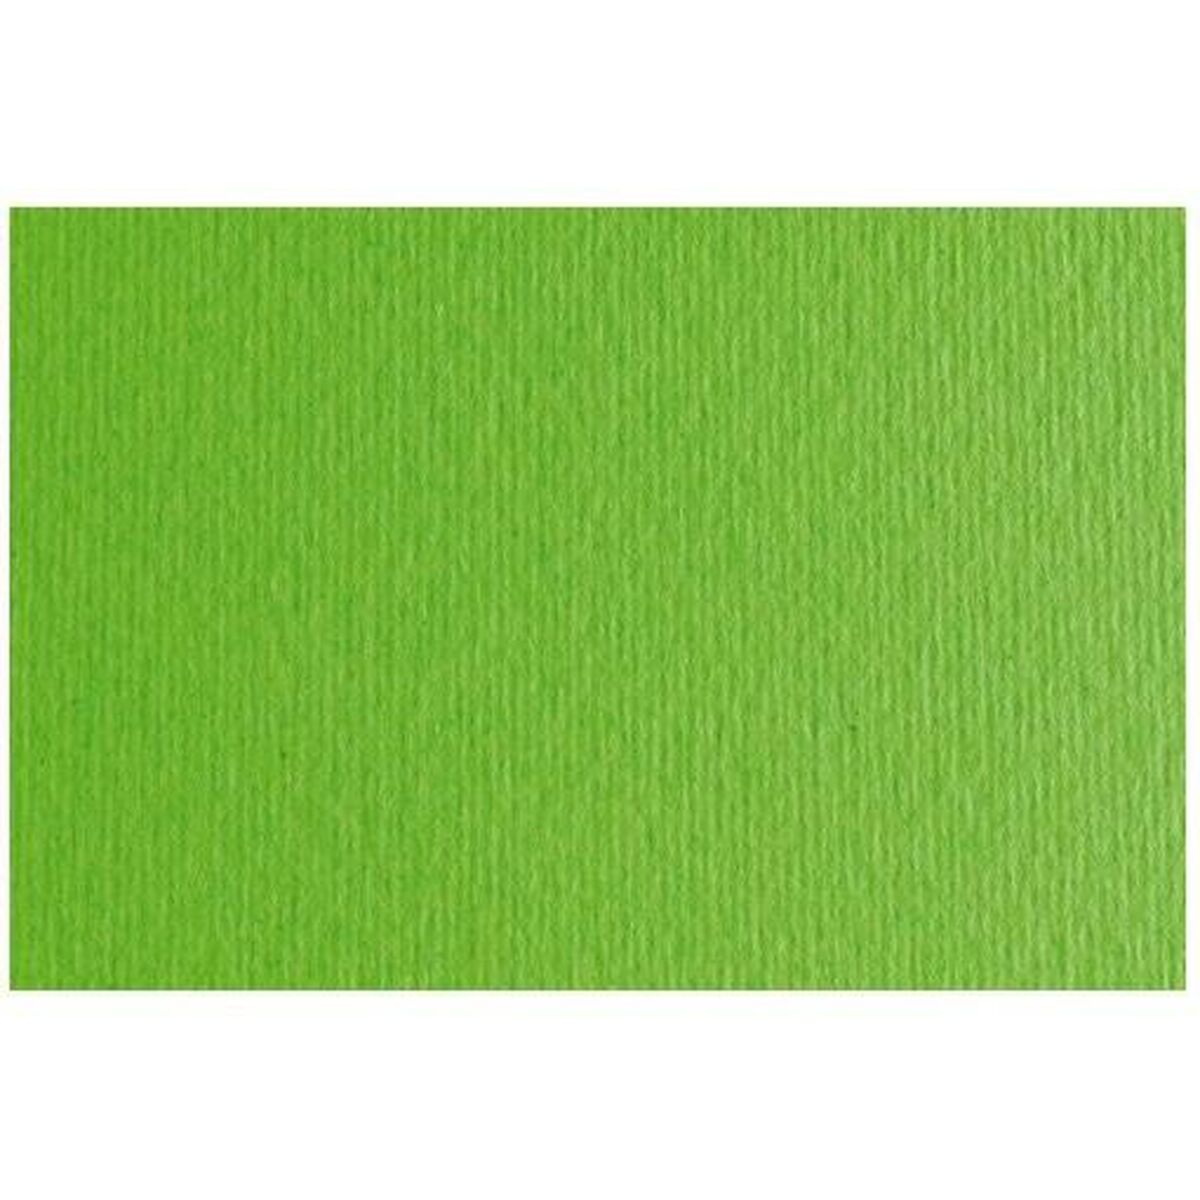 Papier carton Sadipal LR 200 Texturisée Vert clair 50 x 70 cm (20 Unités)